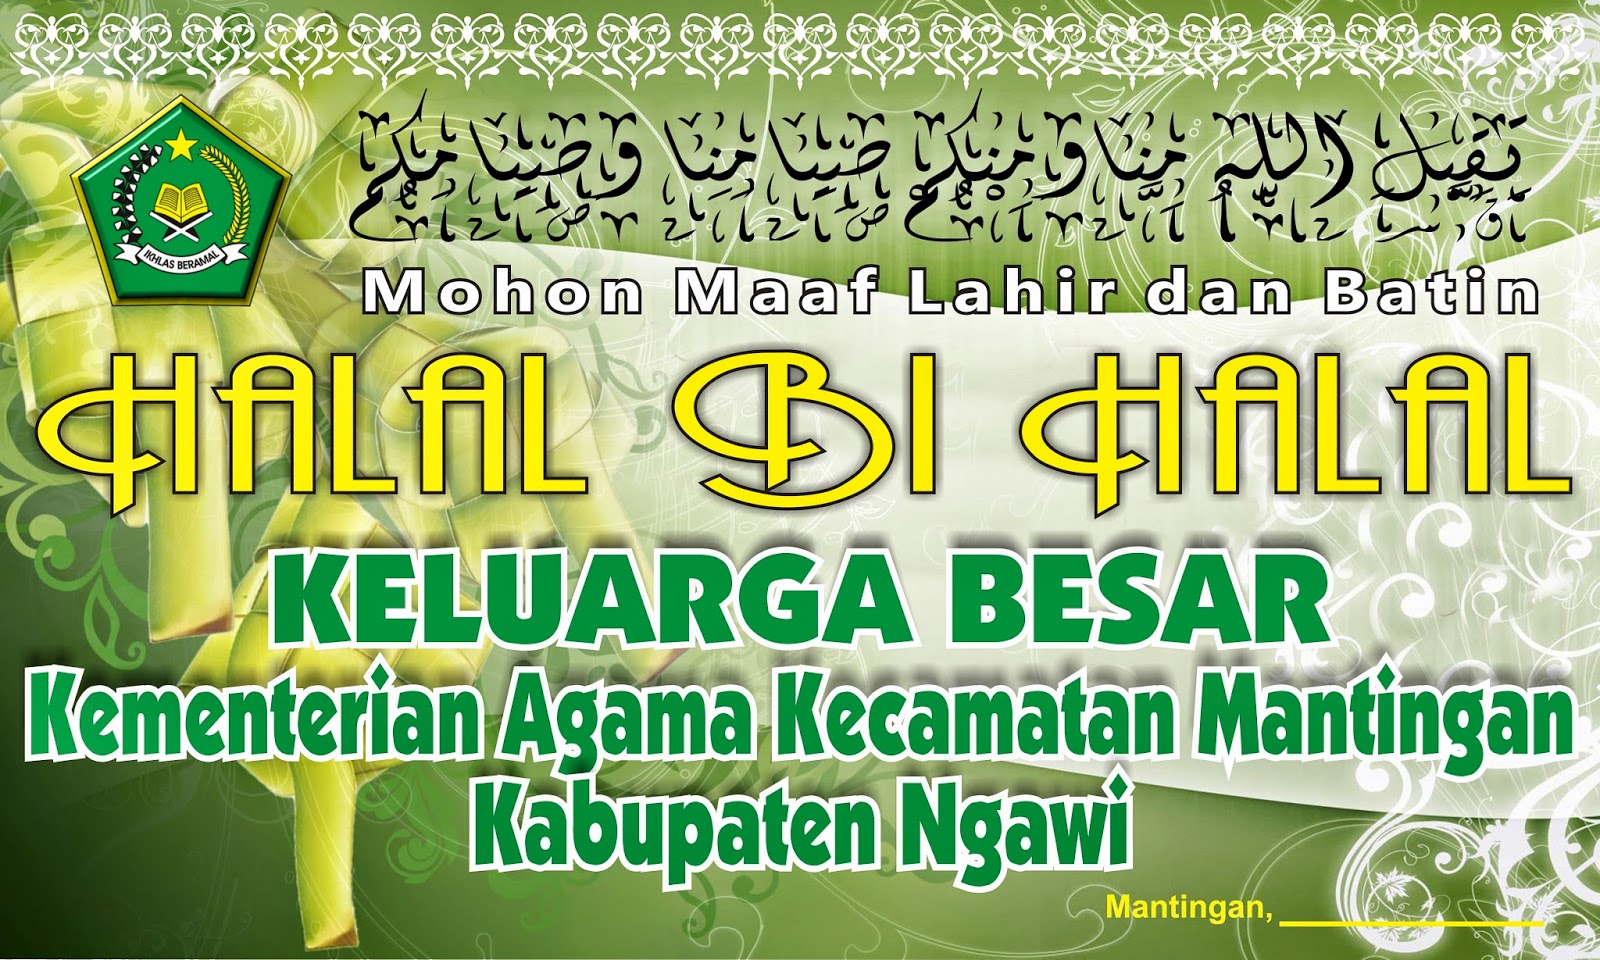 Download Background Halal Bi Halal Kemenag - Pesantren Temulus